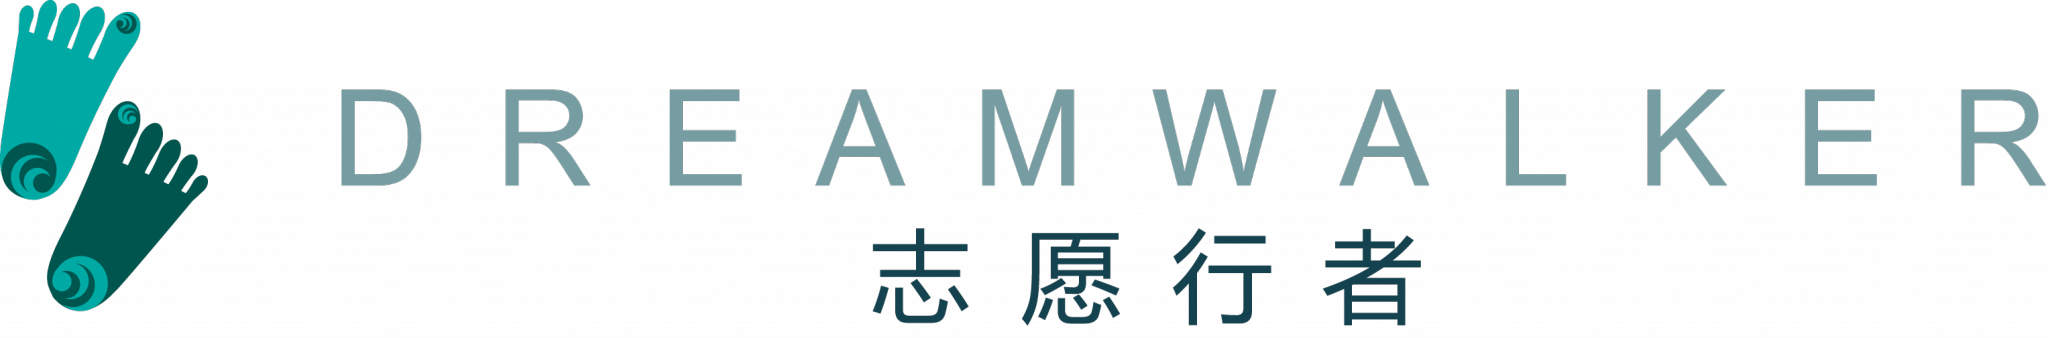 志愿行者DreamwalkerChina|国际志愿者